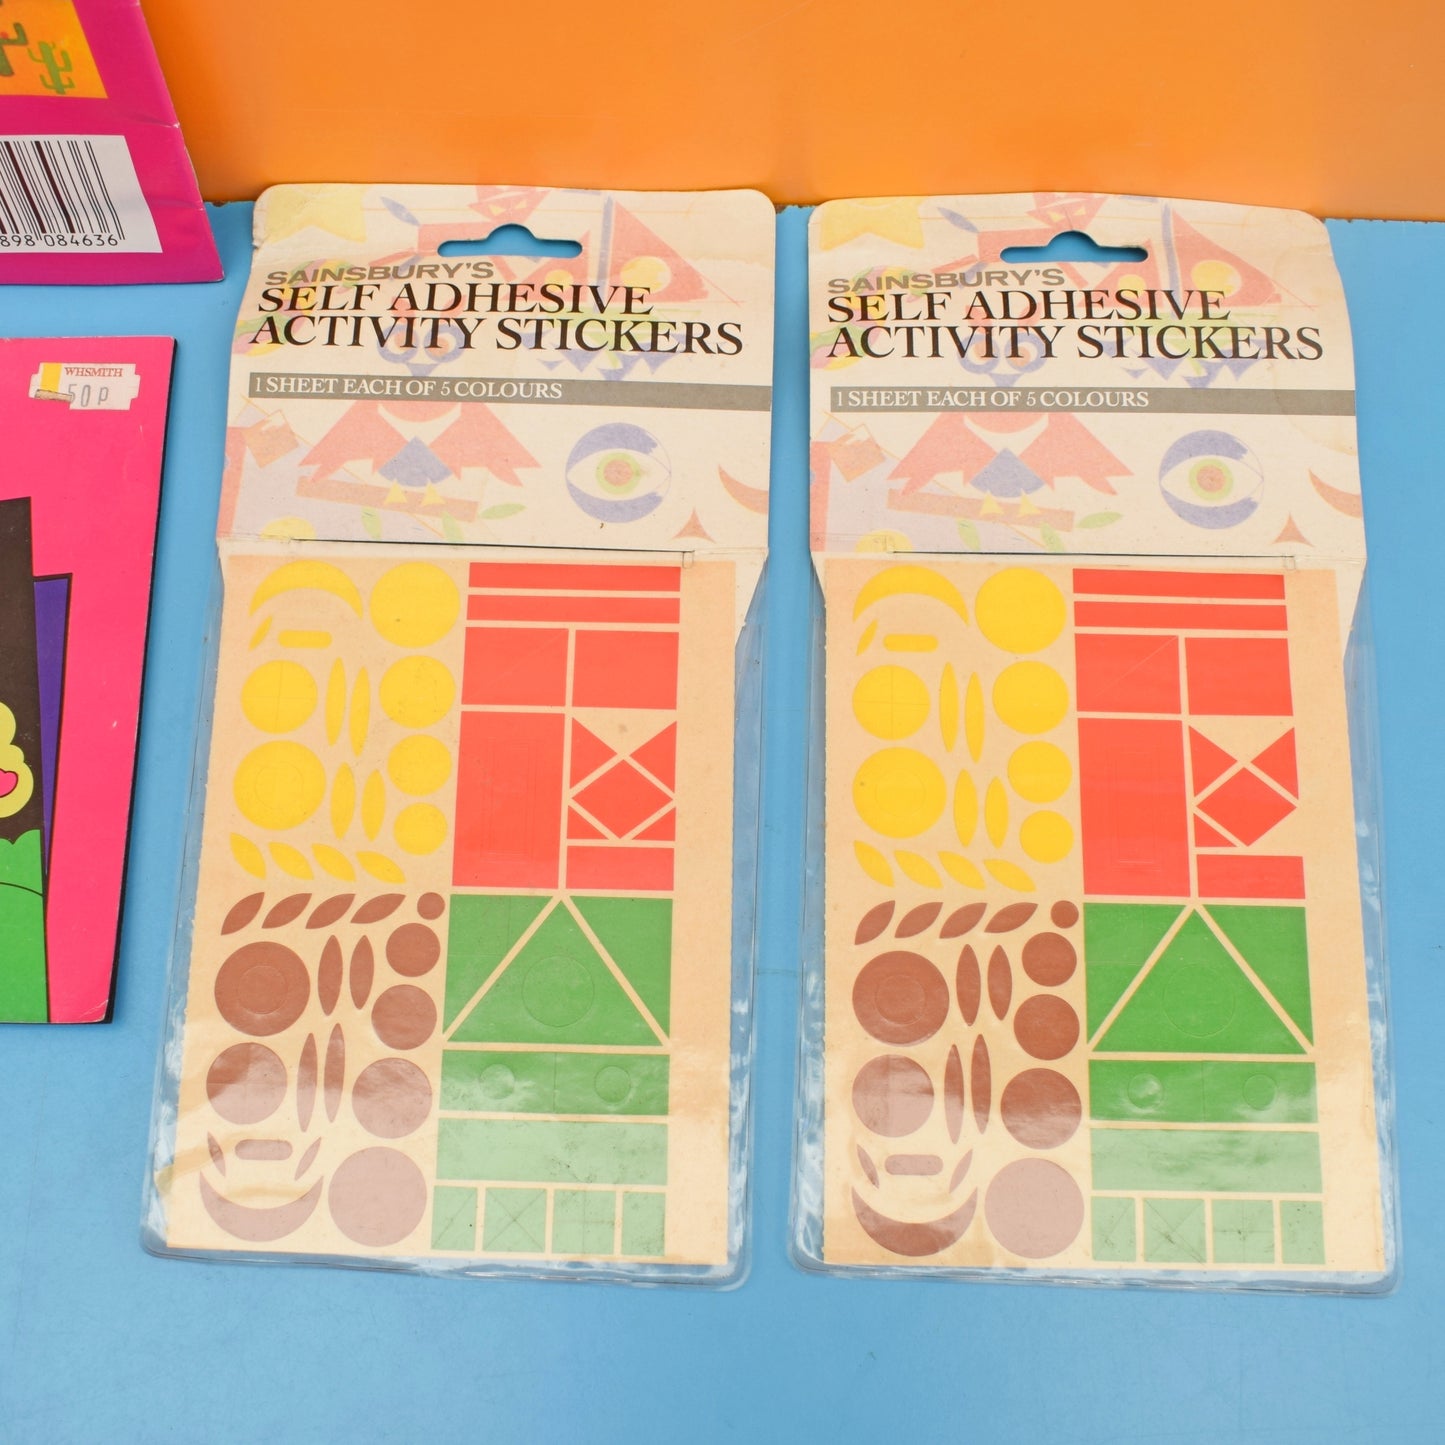 Vintage 1980s Jollycraft Paper Play/ Stickers- Unused